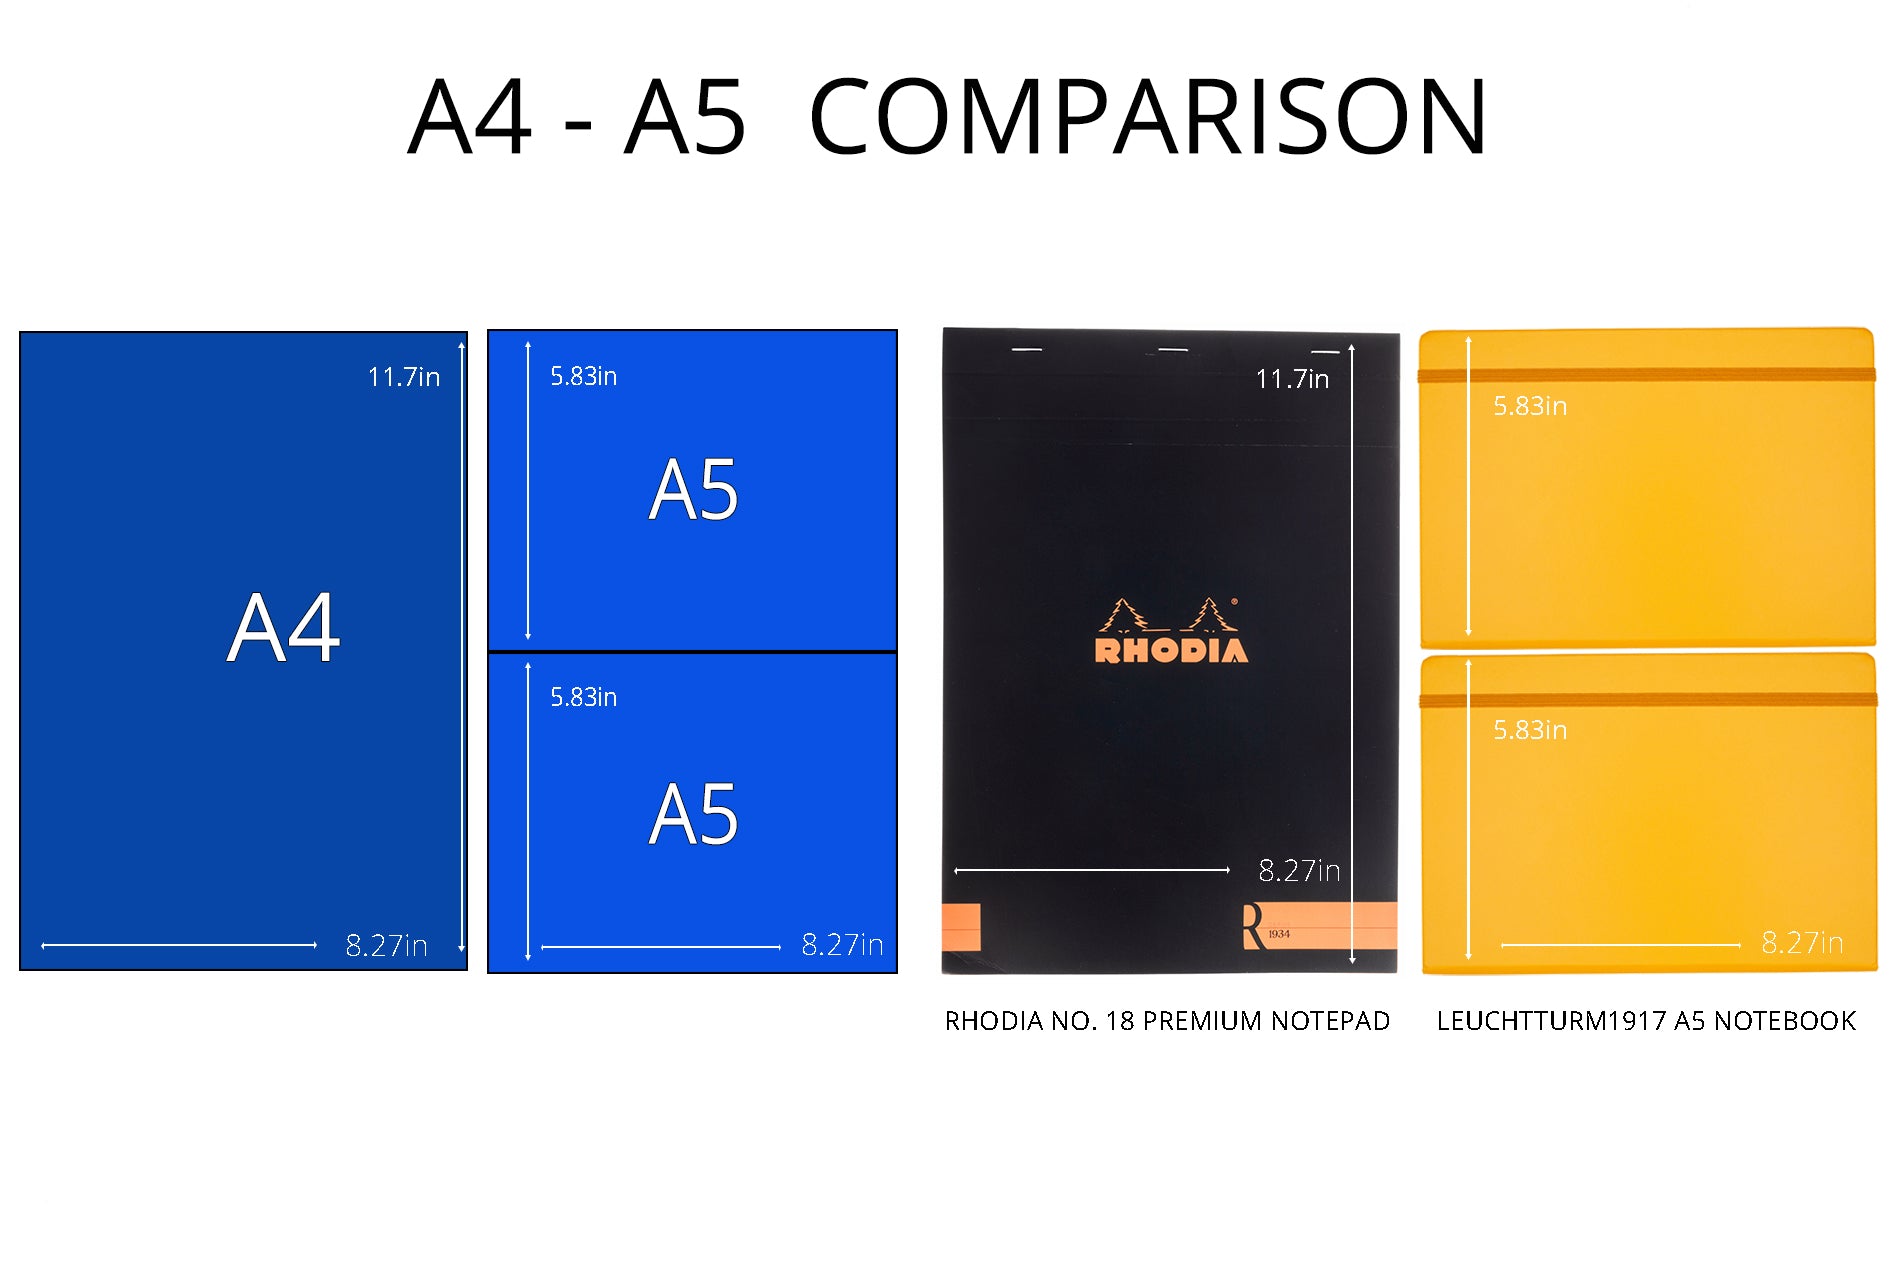 A4 vs A5 comparison